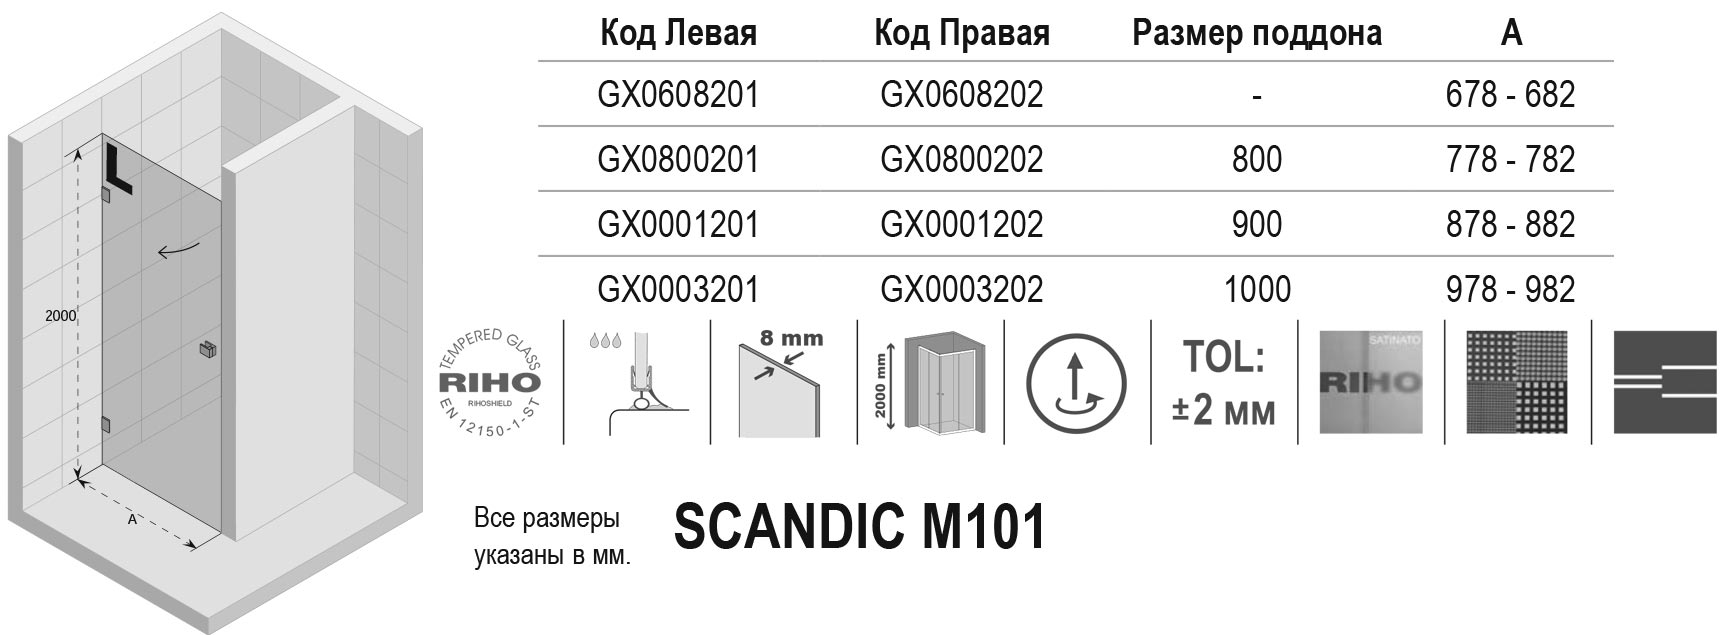 Чертёж Riho Scandic M101 GX0003202